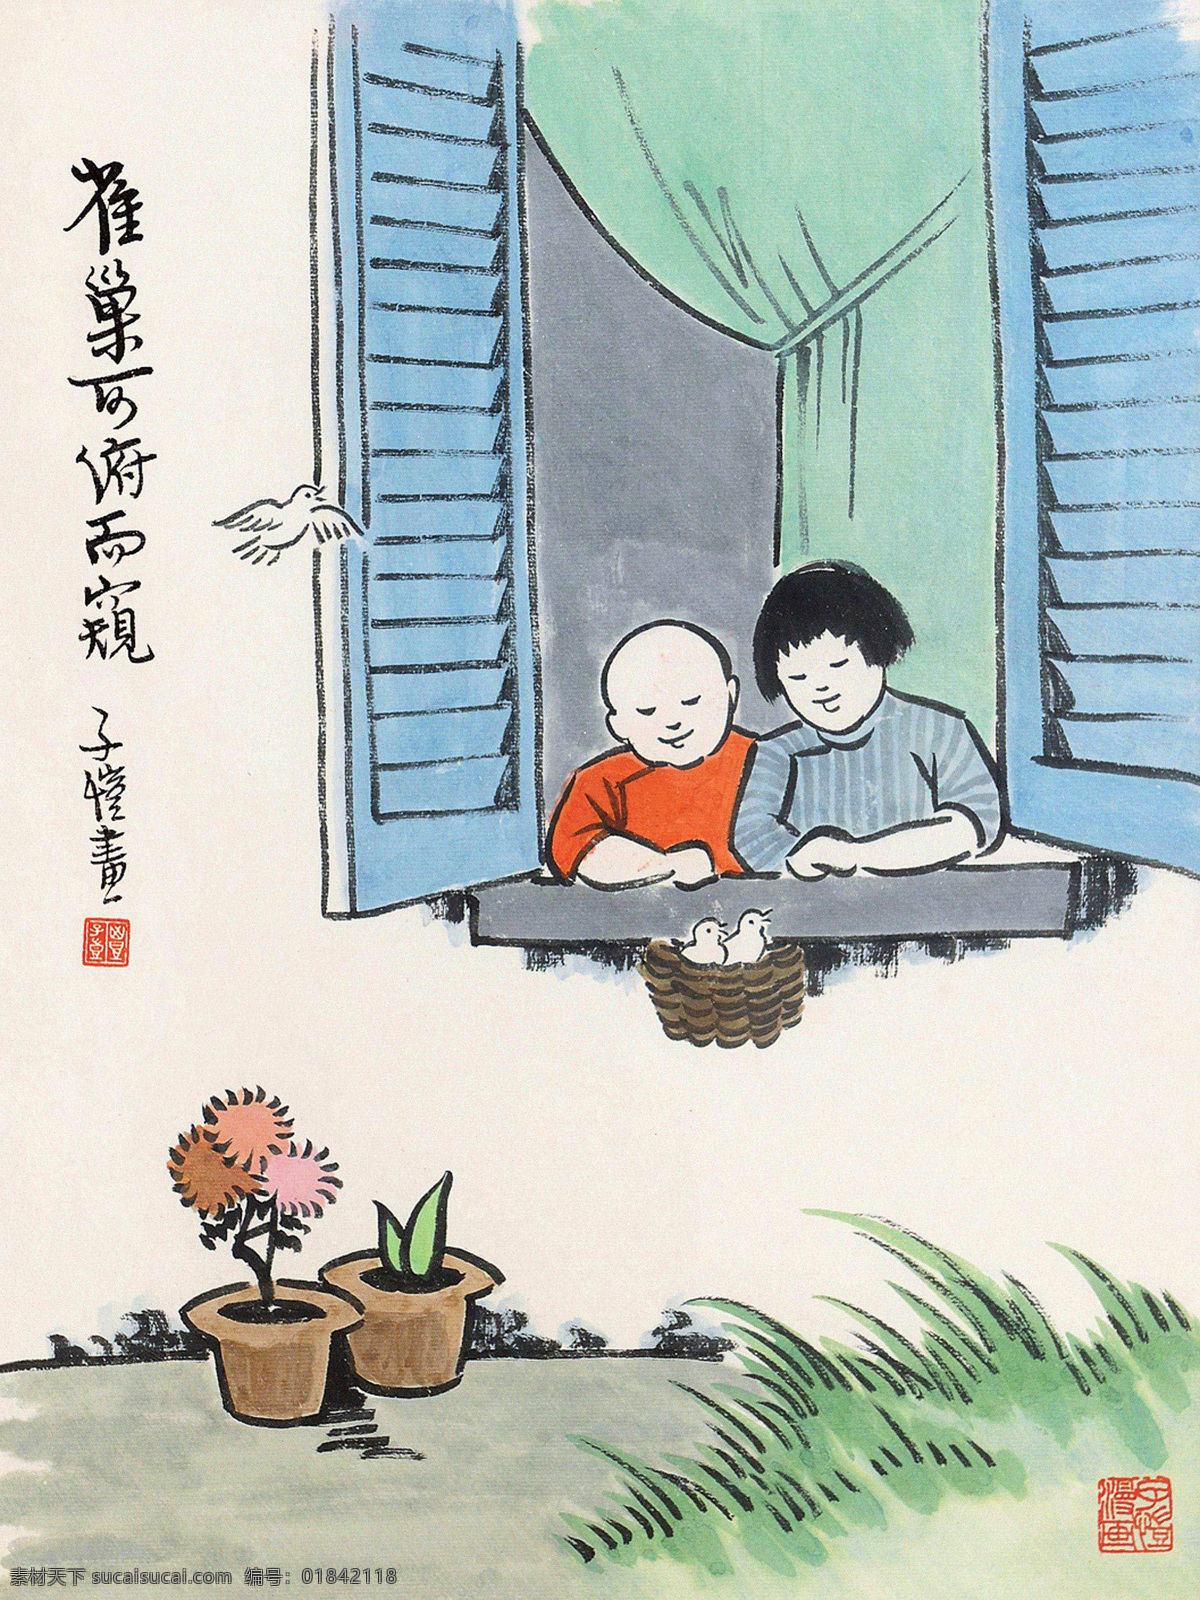 雀巢可俯而窥 丰子恺 国画 水墨 漫画 幼童 窗户 人物 中国画 绘画书法 文化艺术